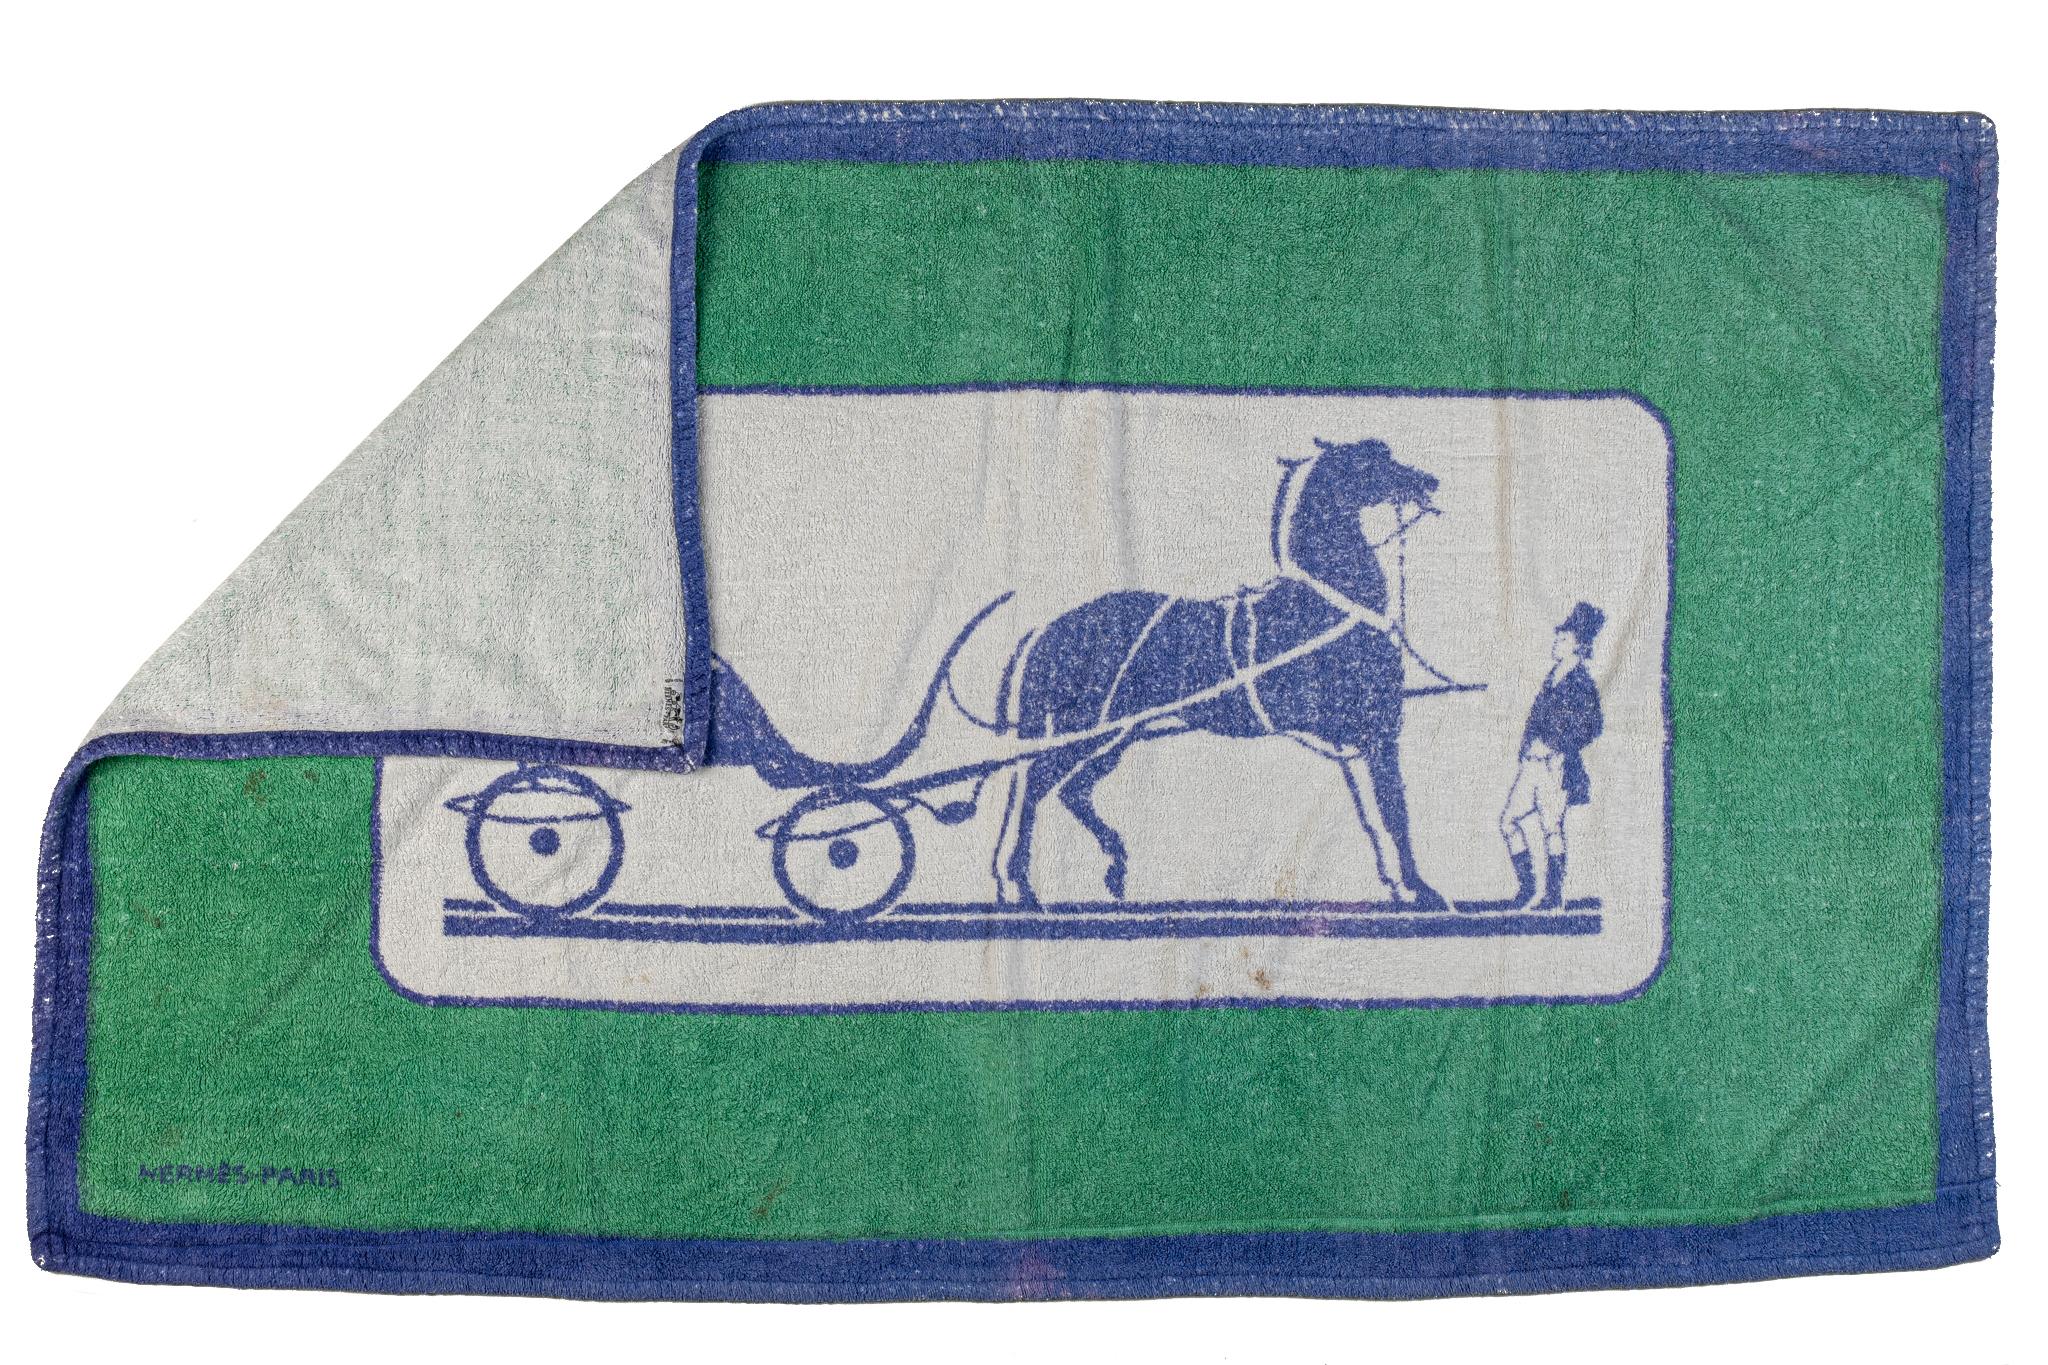 Serviette de plage Hermes vintage carriage. Combinaison de bleu, vert et blanc. Veuillez vous référer à la photo pour 2 taches.